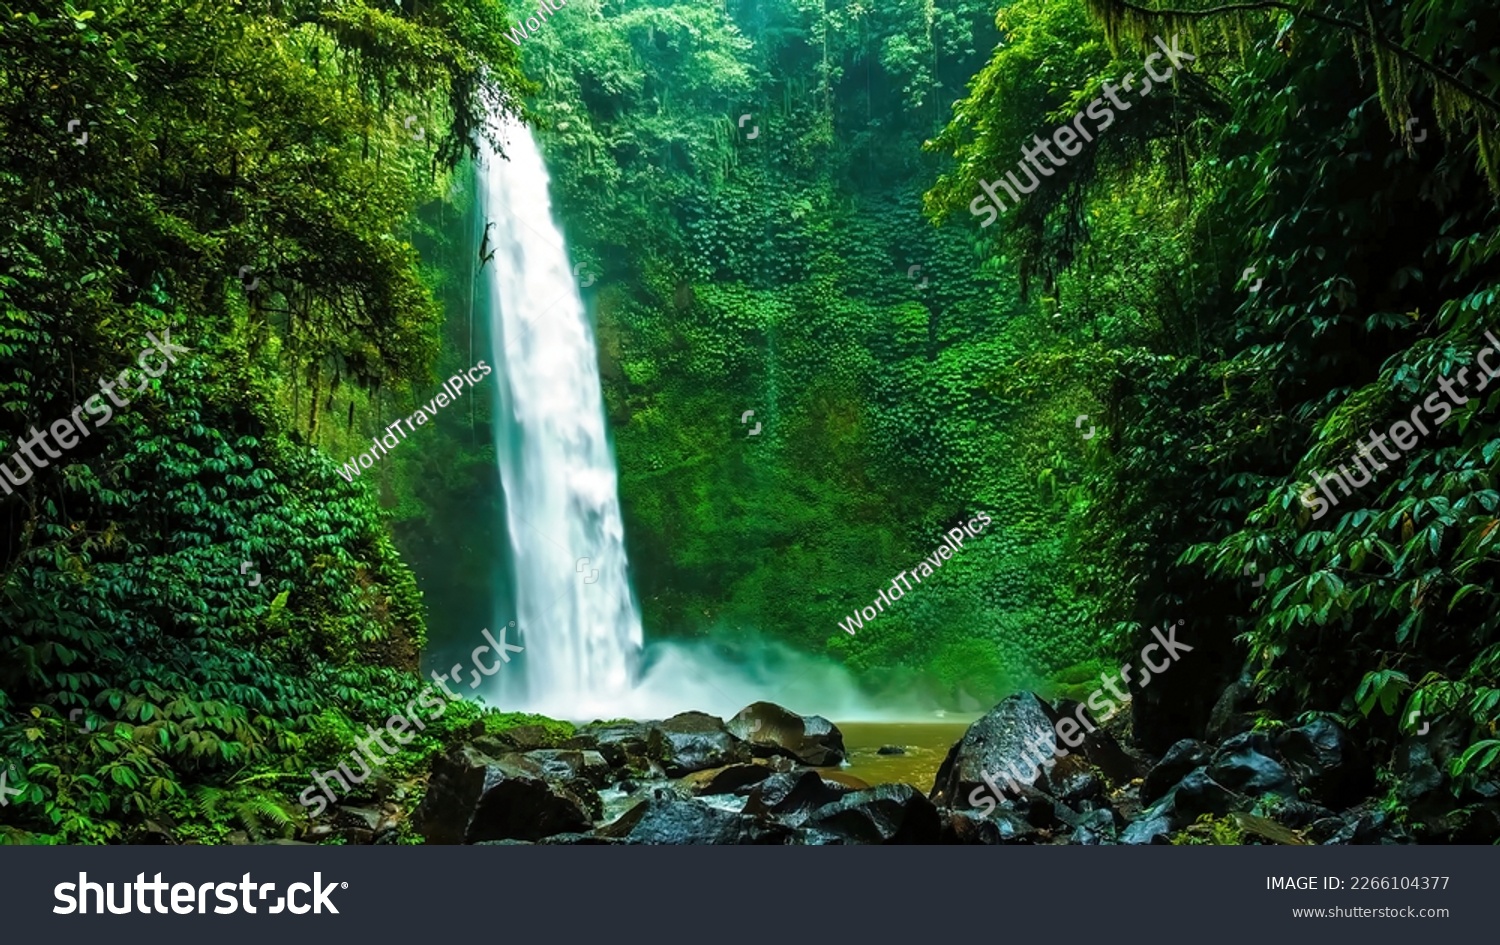 Nungnung Waterfall in Bali, Indonesia #2266104377